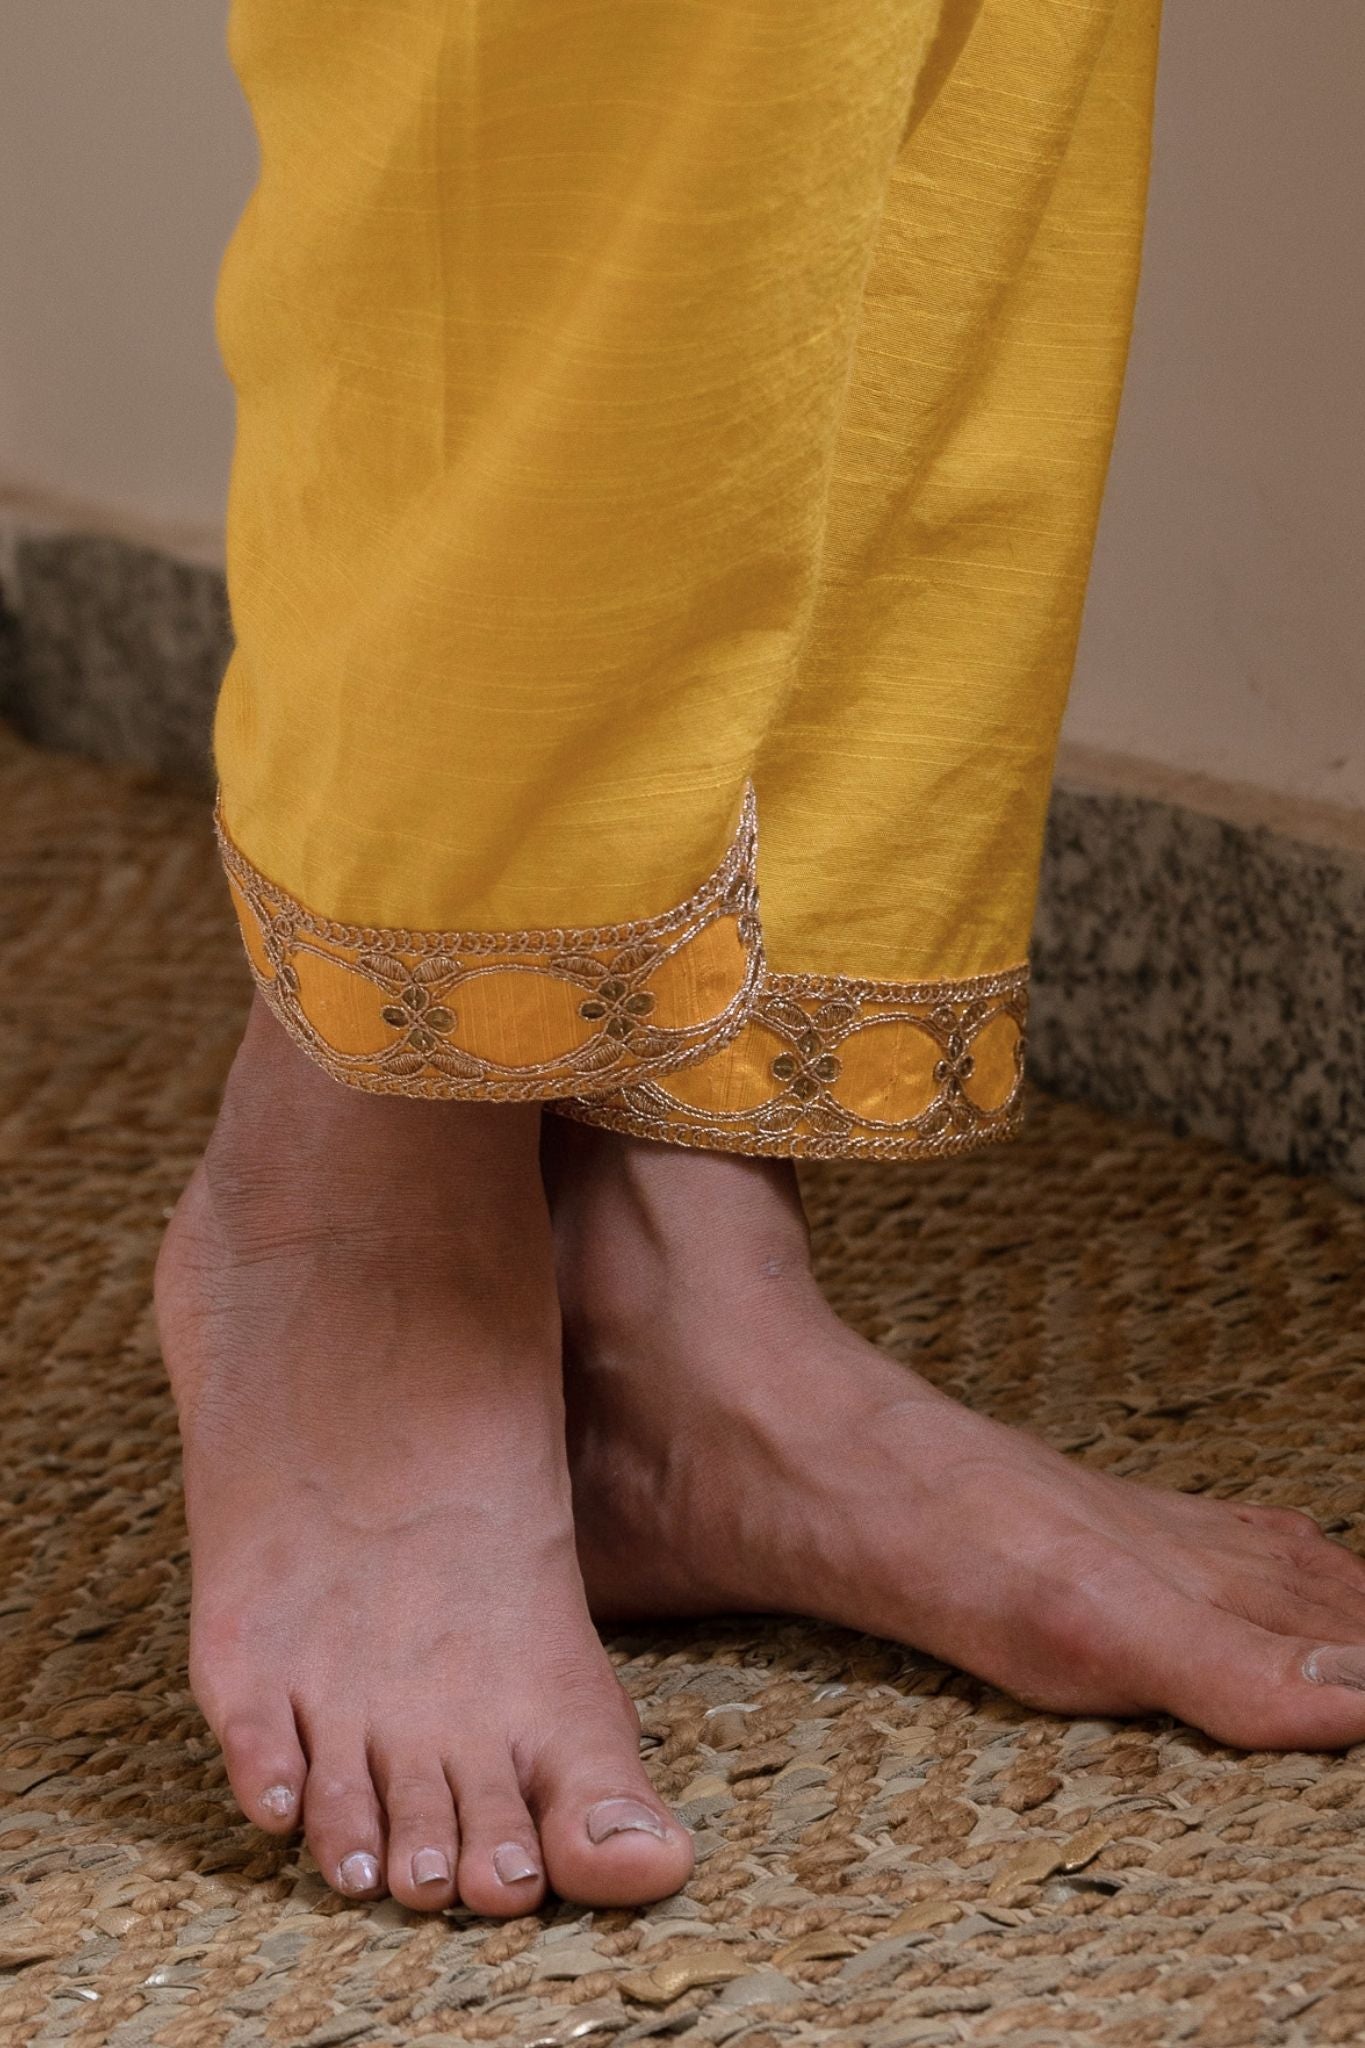 Saifi Kurta in Yellow-White Tissue stripes with salwar